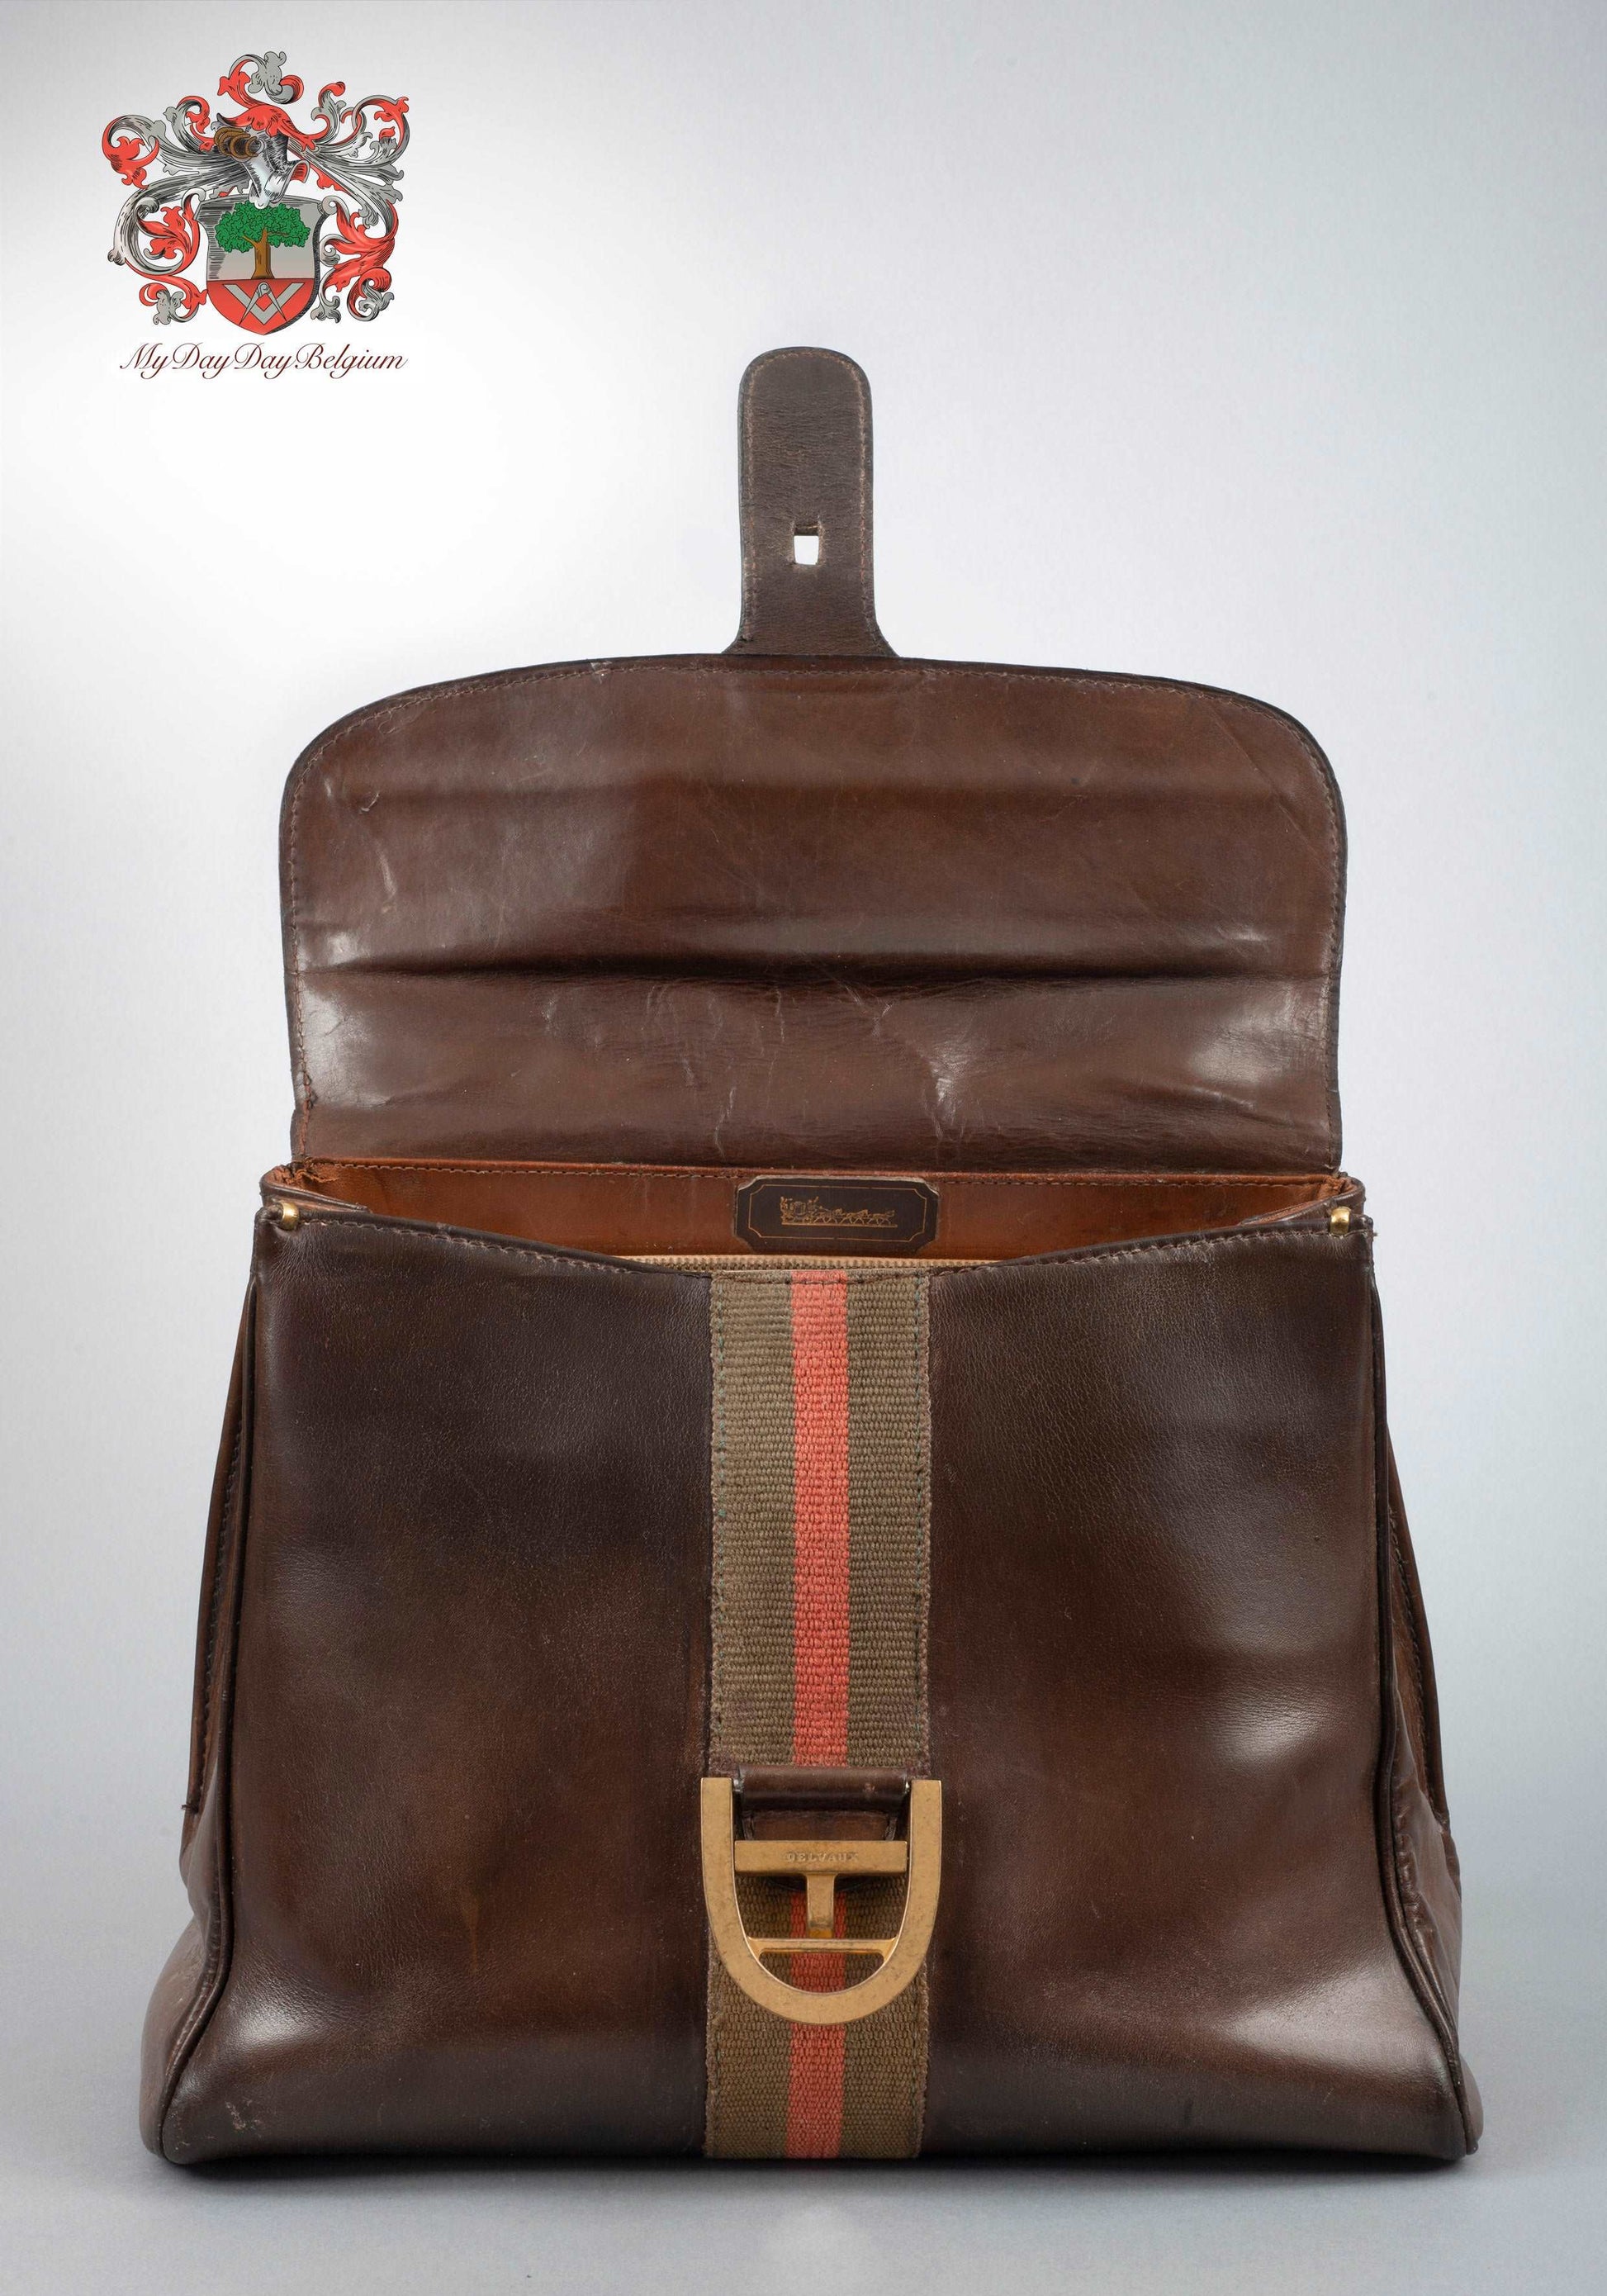 Vintage DELVAUX Black leather handbag bag 1970s